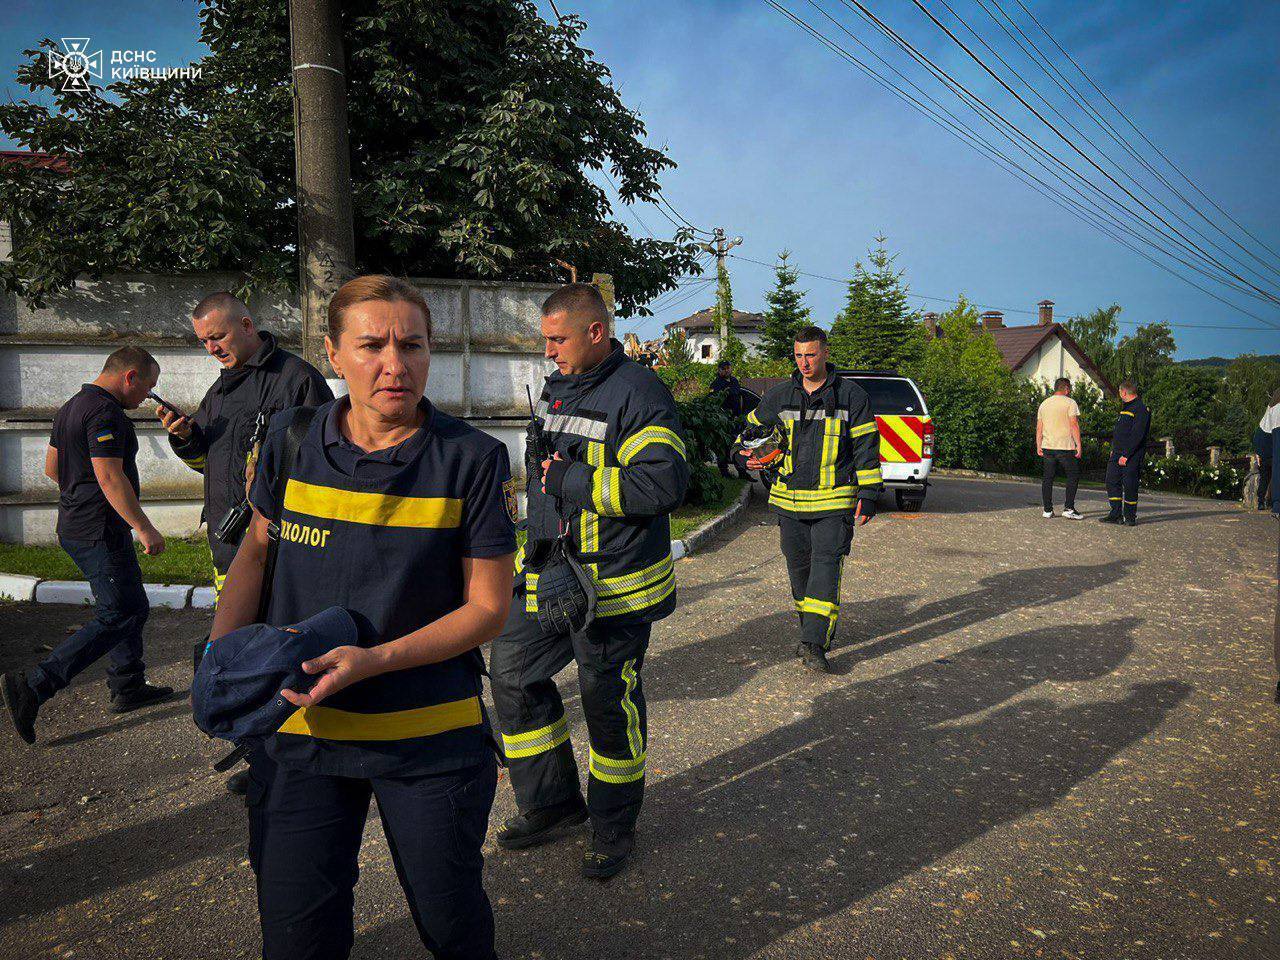 Є постраждалі, пошкоджено будинки: наслідки ракетної атаки на Київщину 23 червня. Усі подробиці, відео і фото